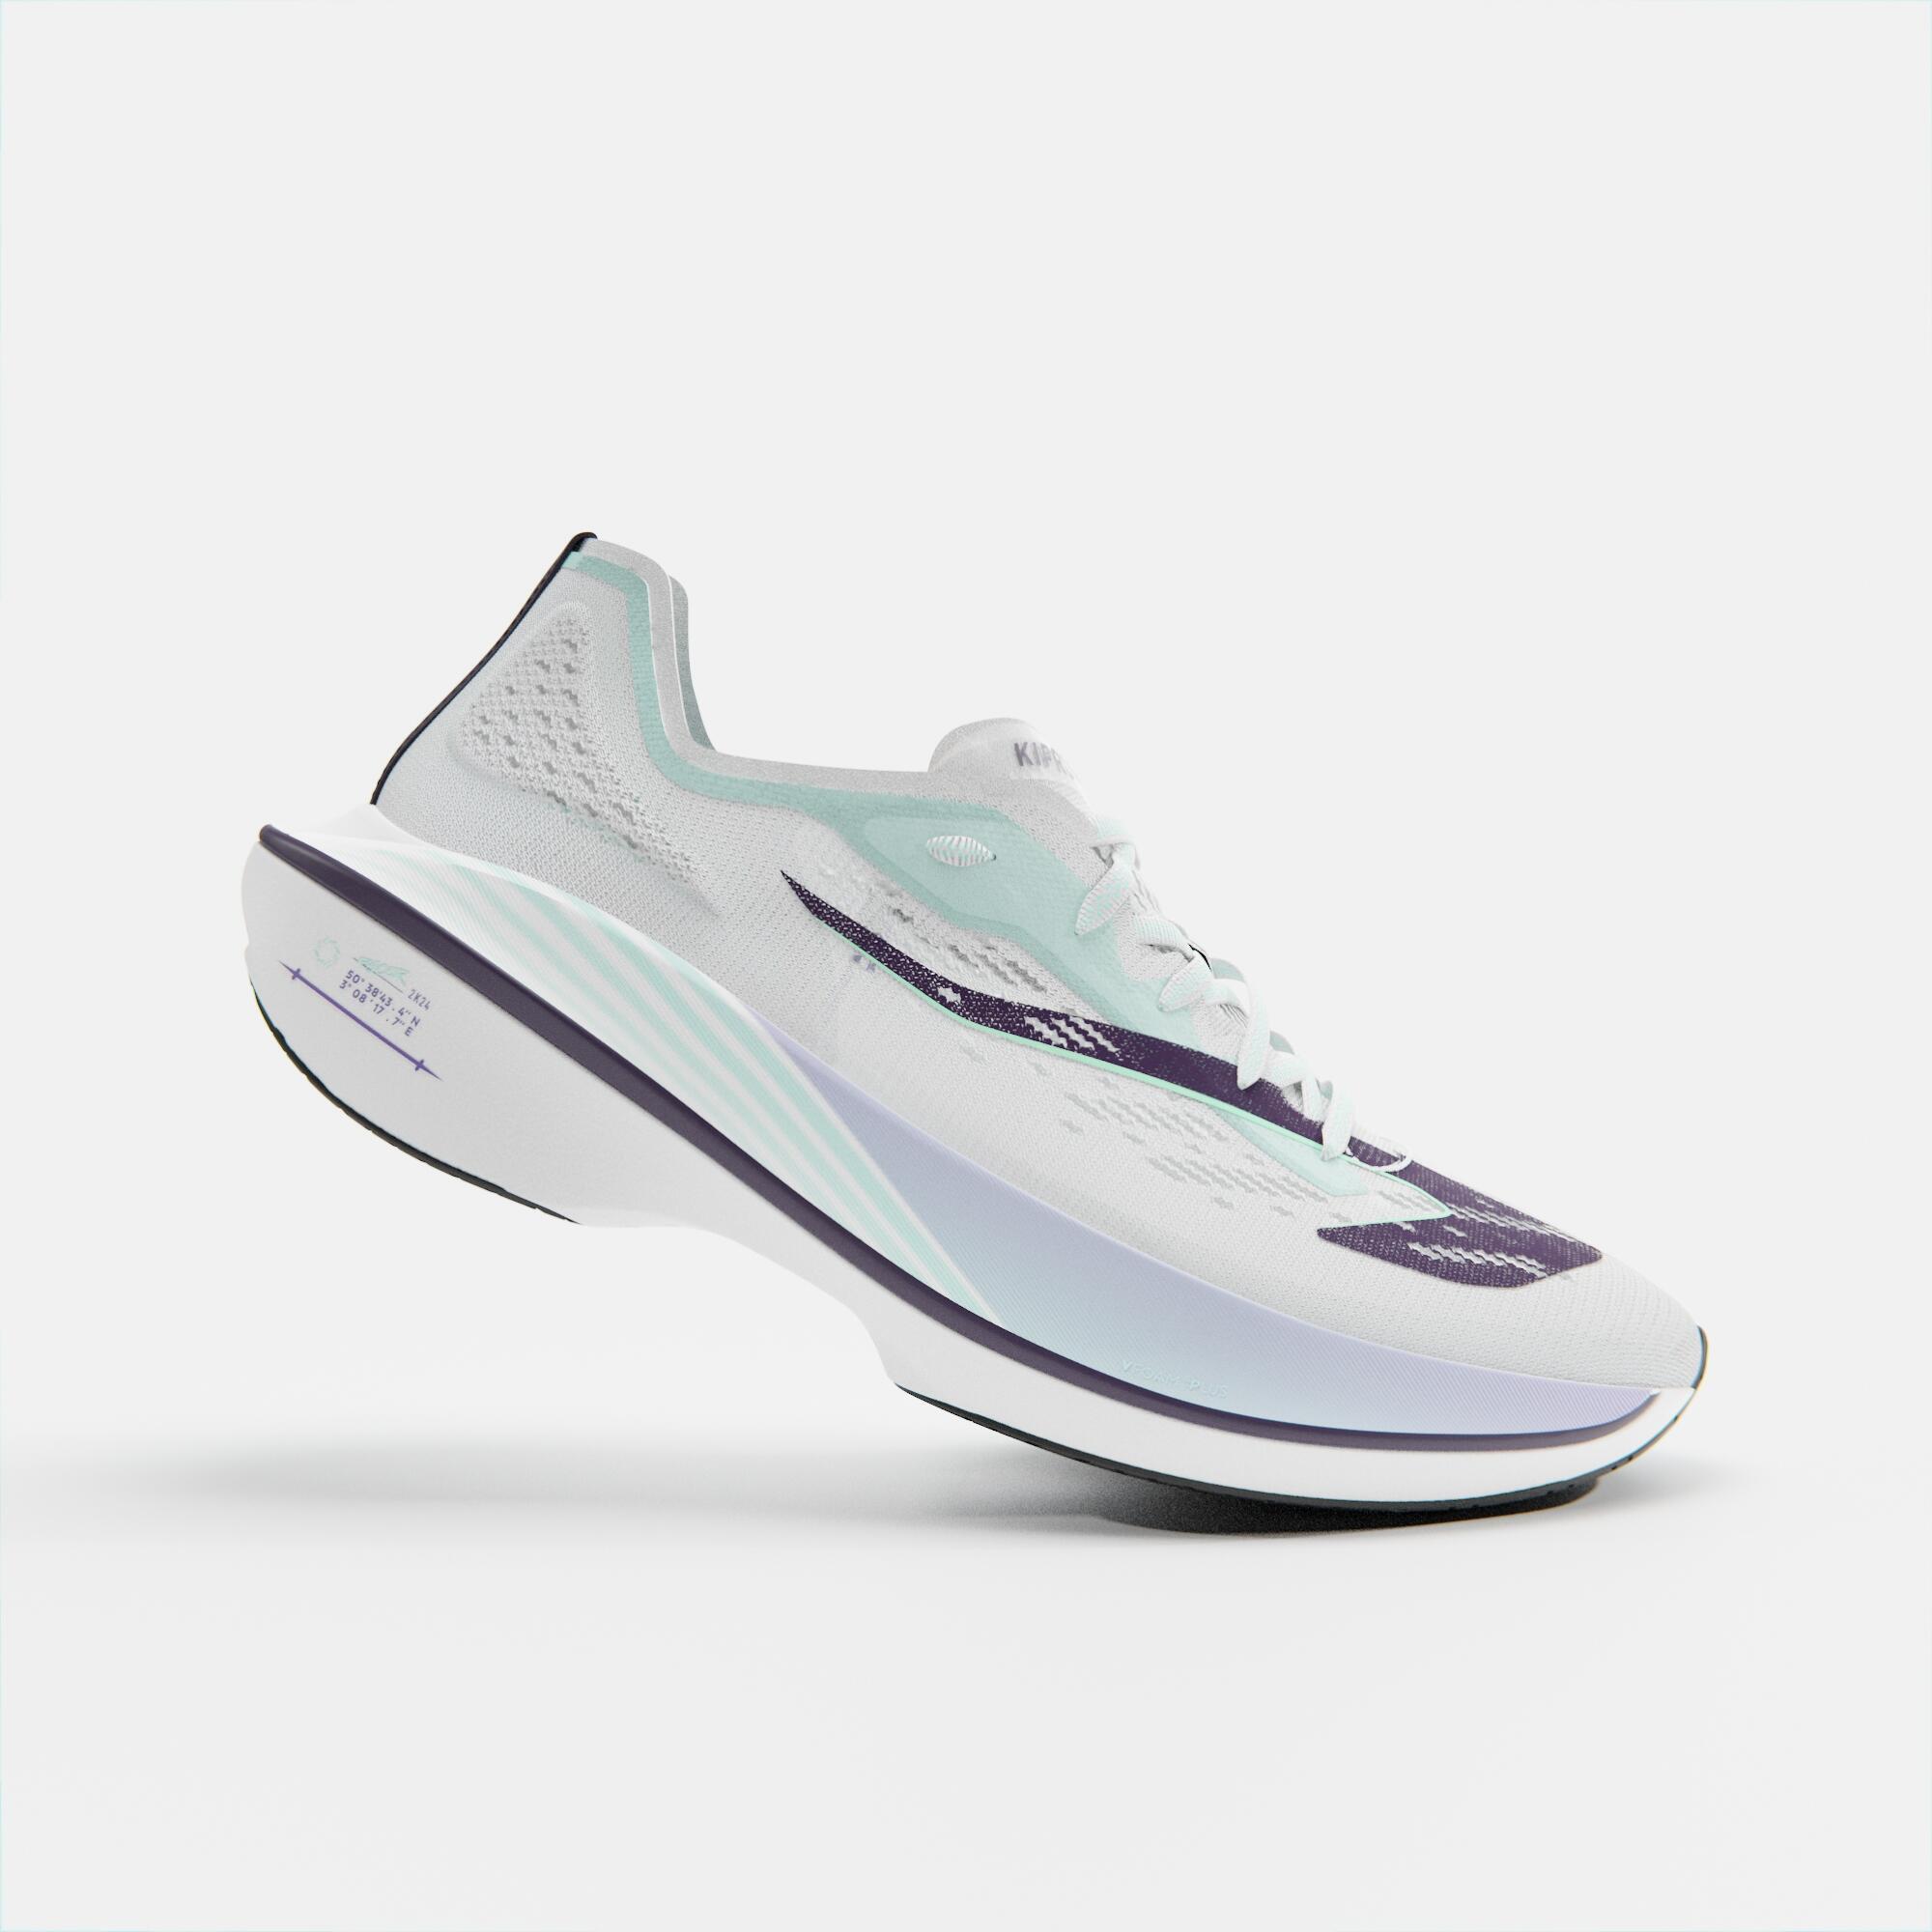 KIPRUN  Chaussures - KD900X LD 